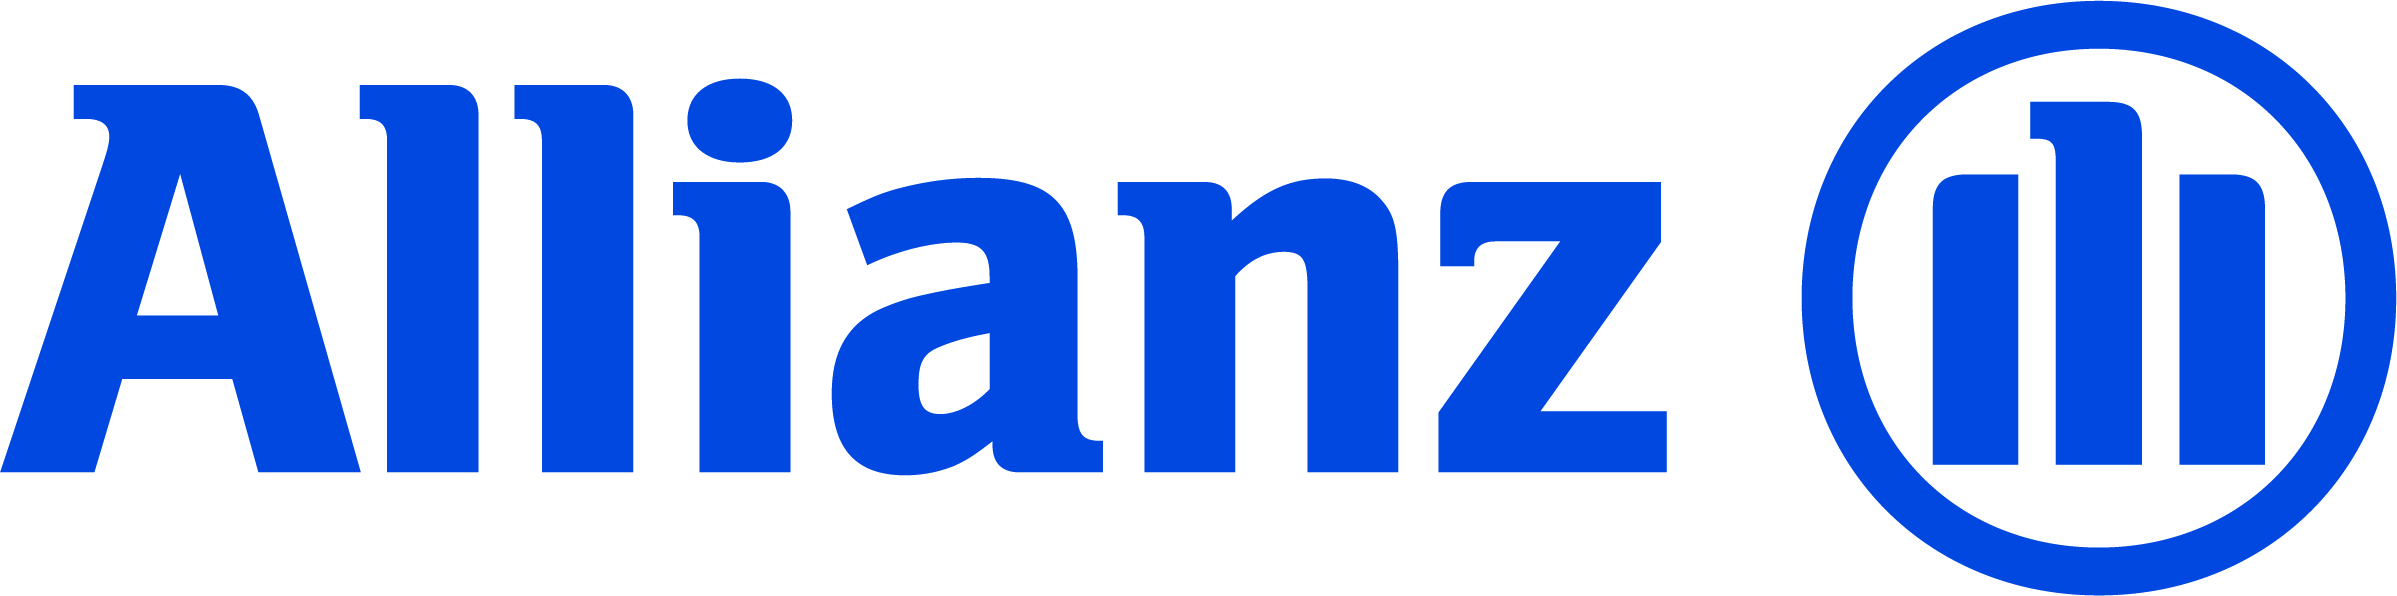 Allianz Life logo